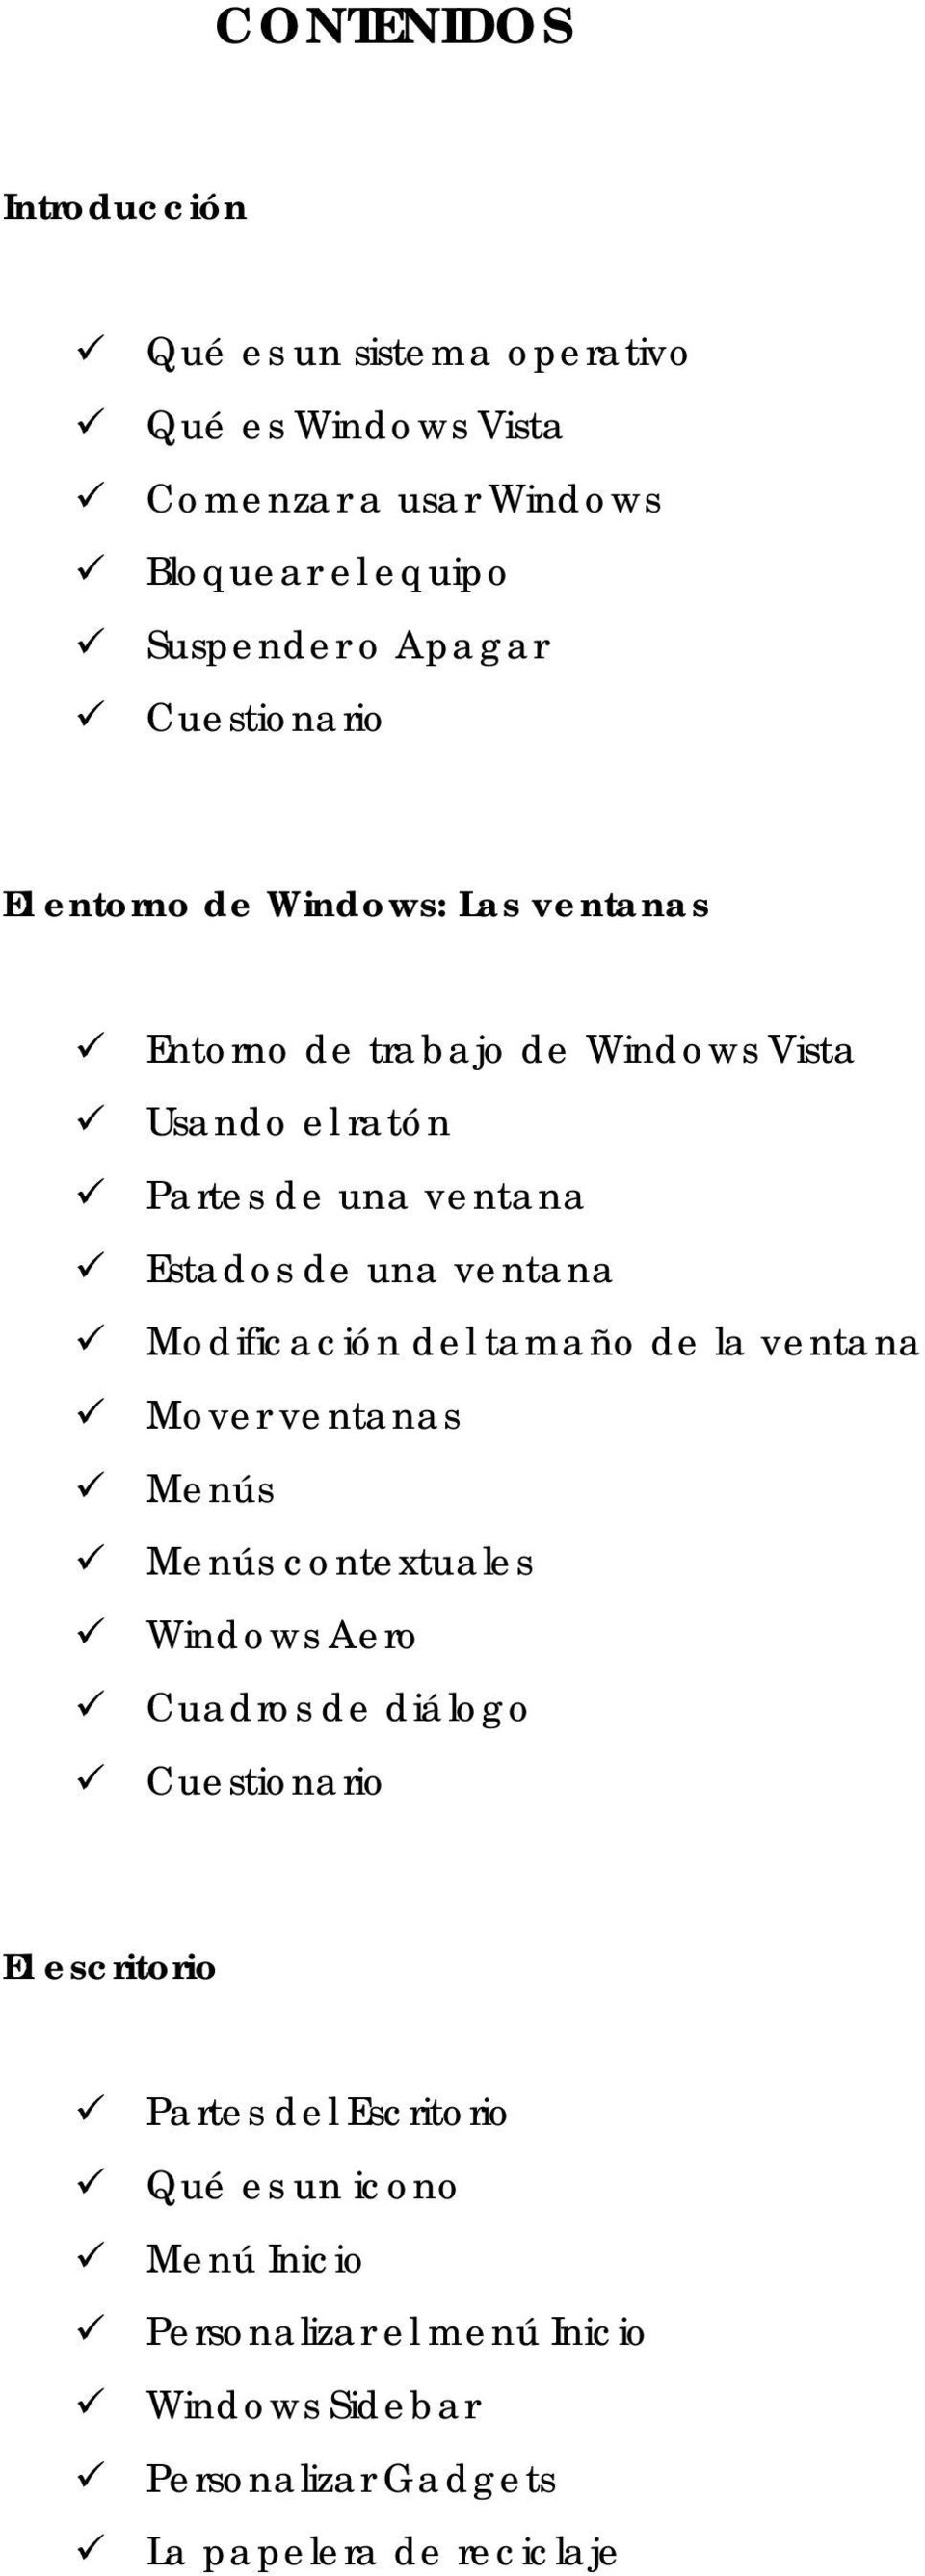 ventana Modificación del tamaño de la ventana Mover ventanas Menús Menús contextuales Windows Aero Cuadros de diálogo El escritorio